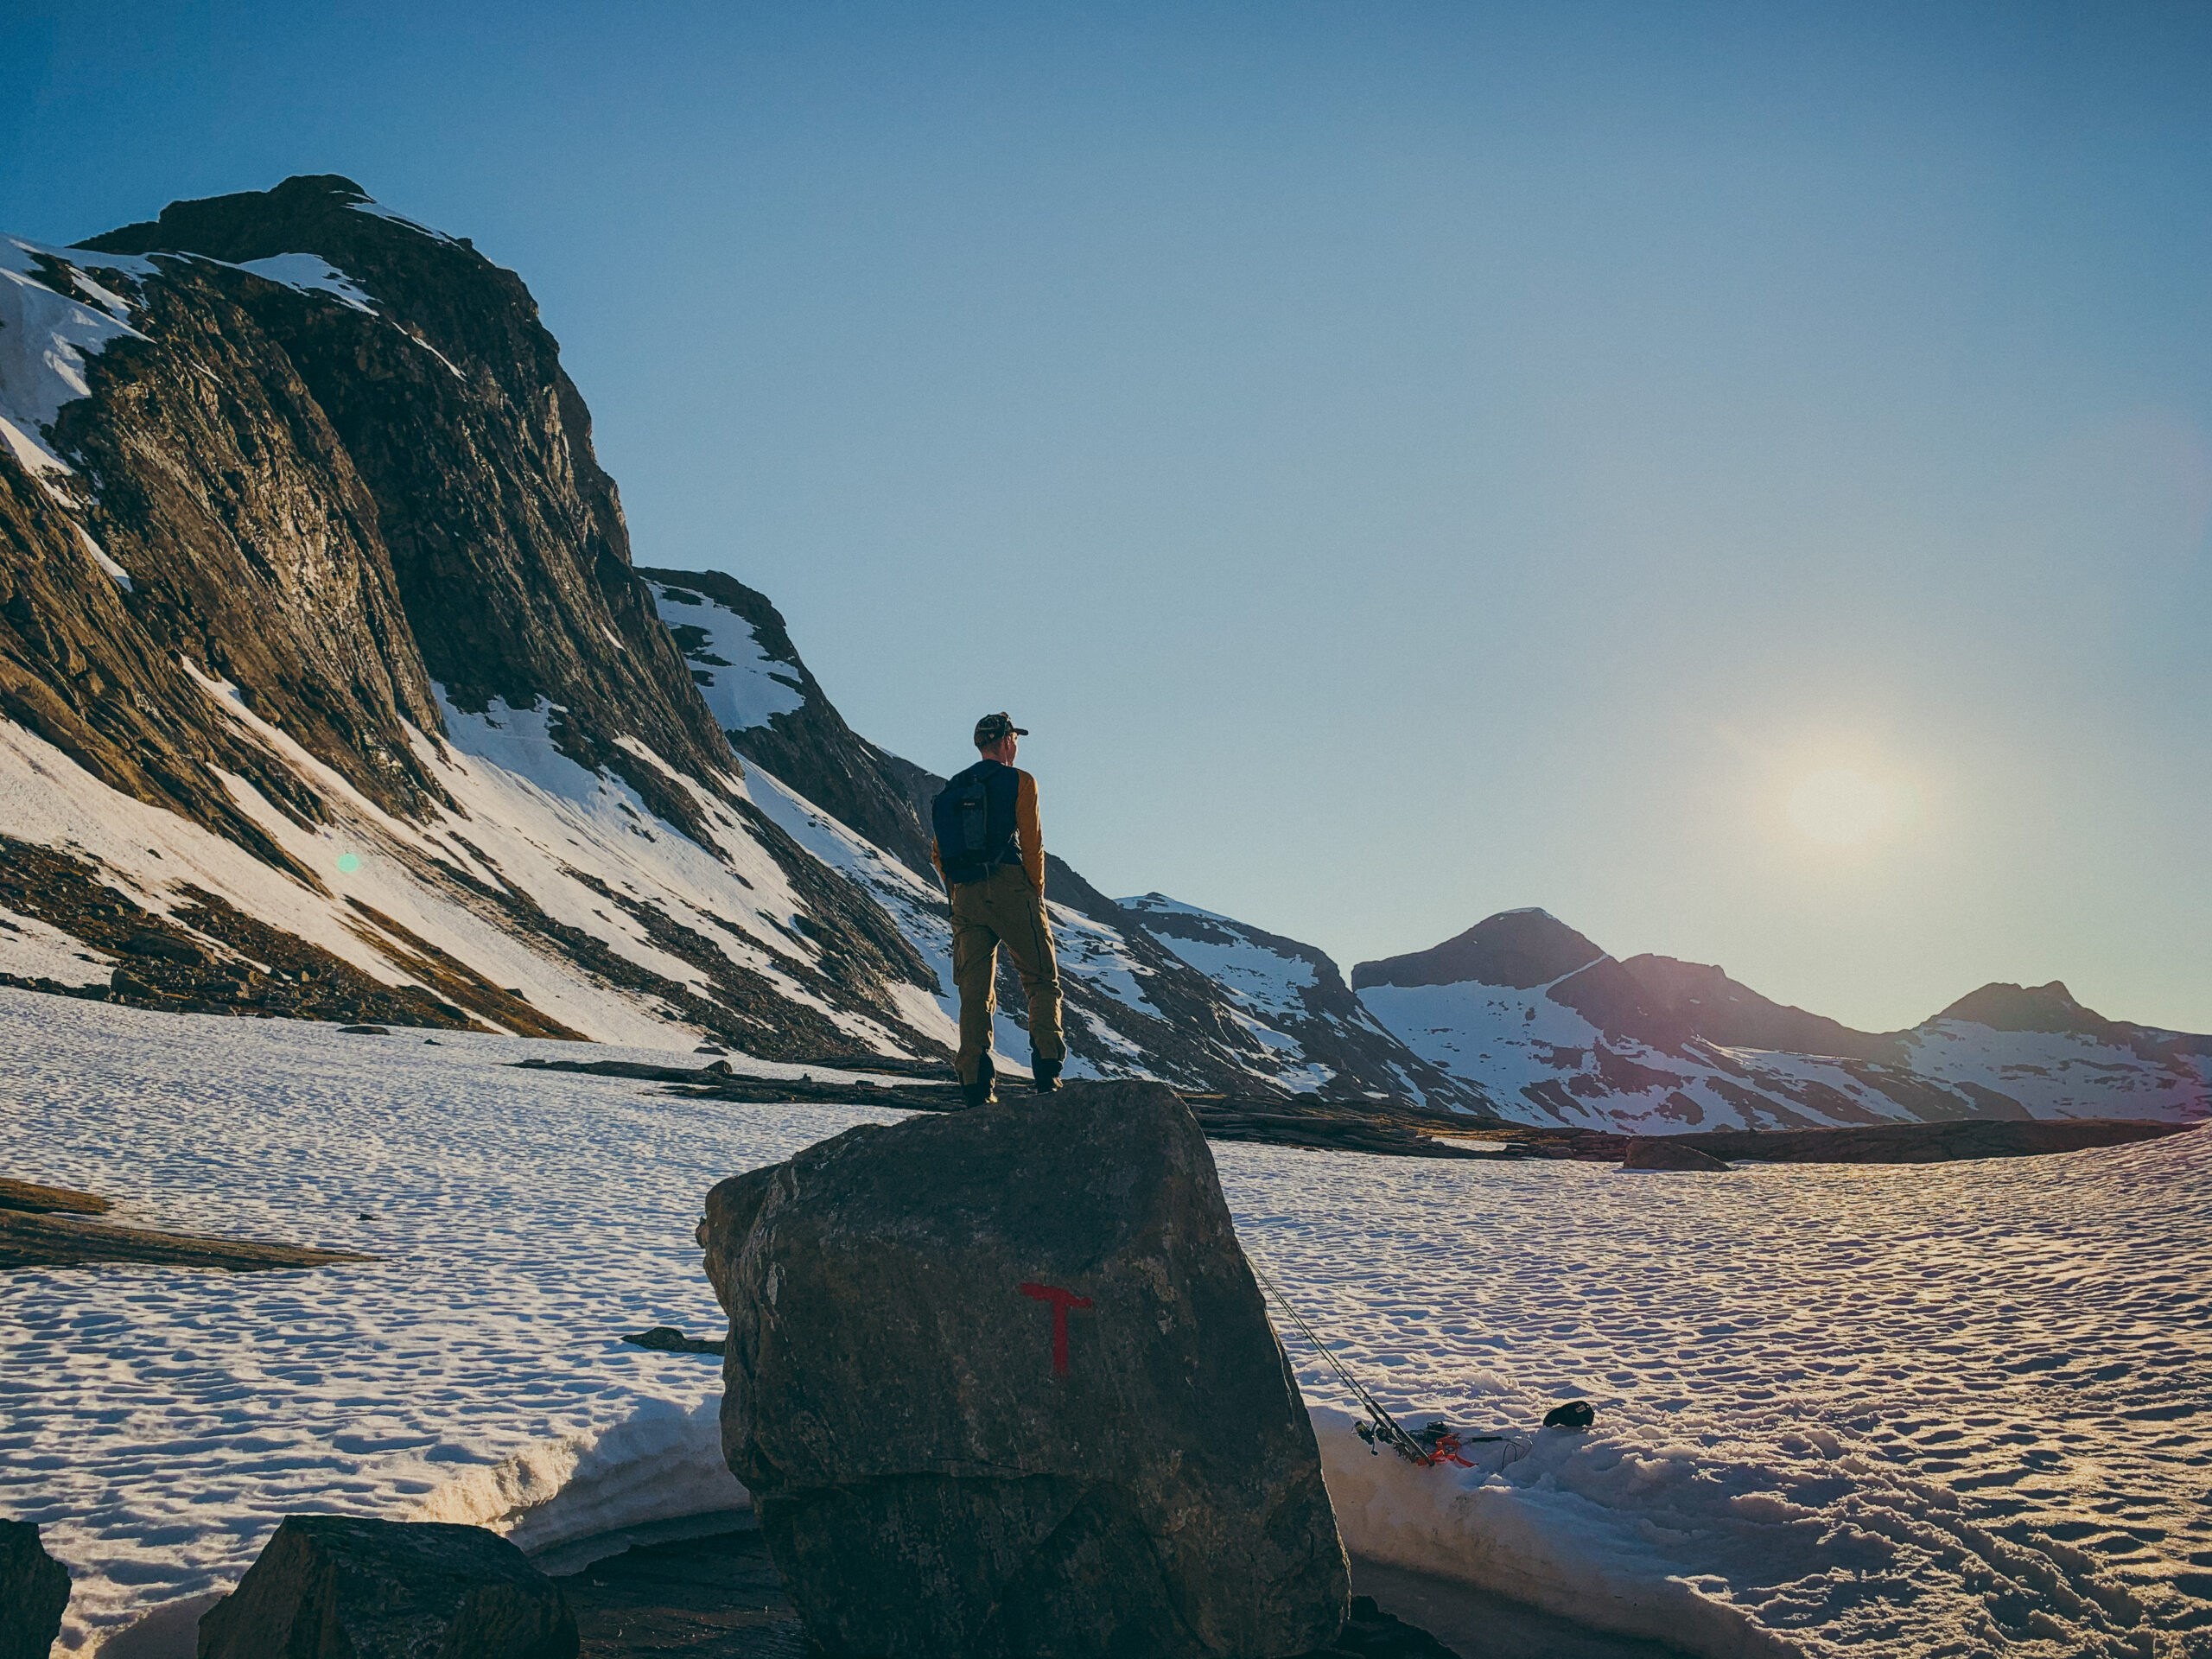 Mann står på en turistforening-sten med fjell i bakgrunn og soler seg